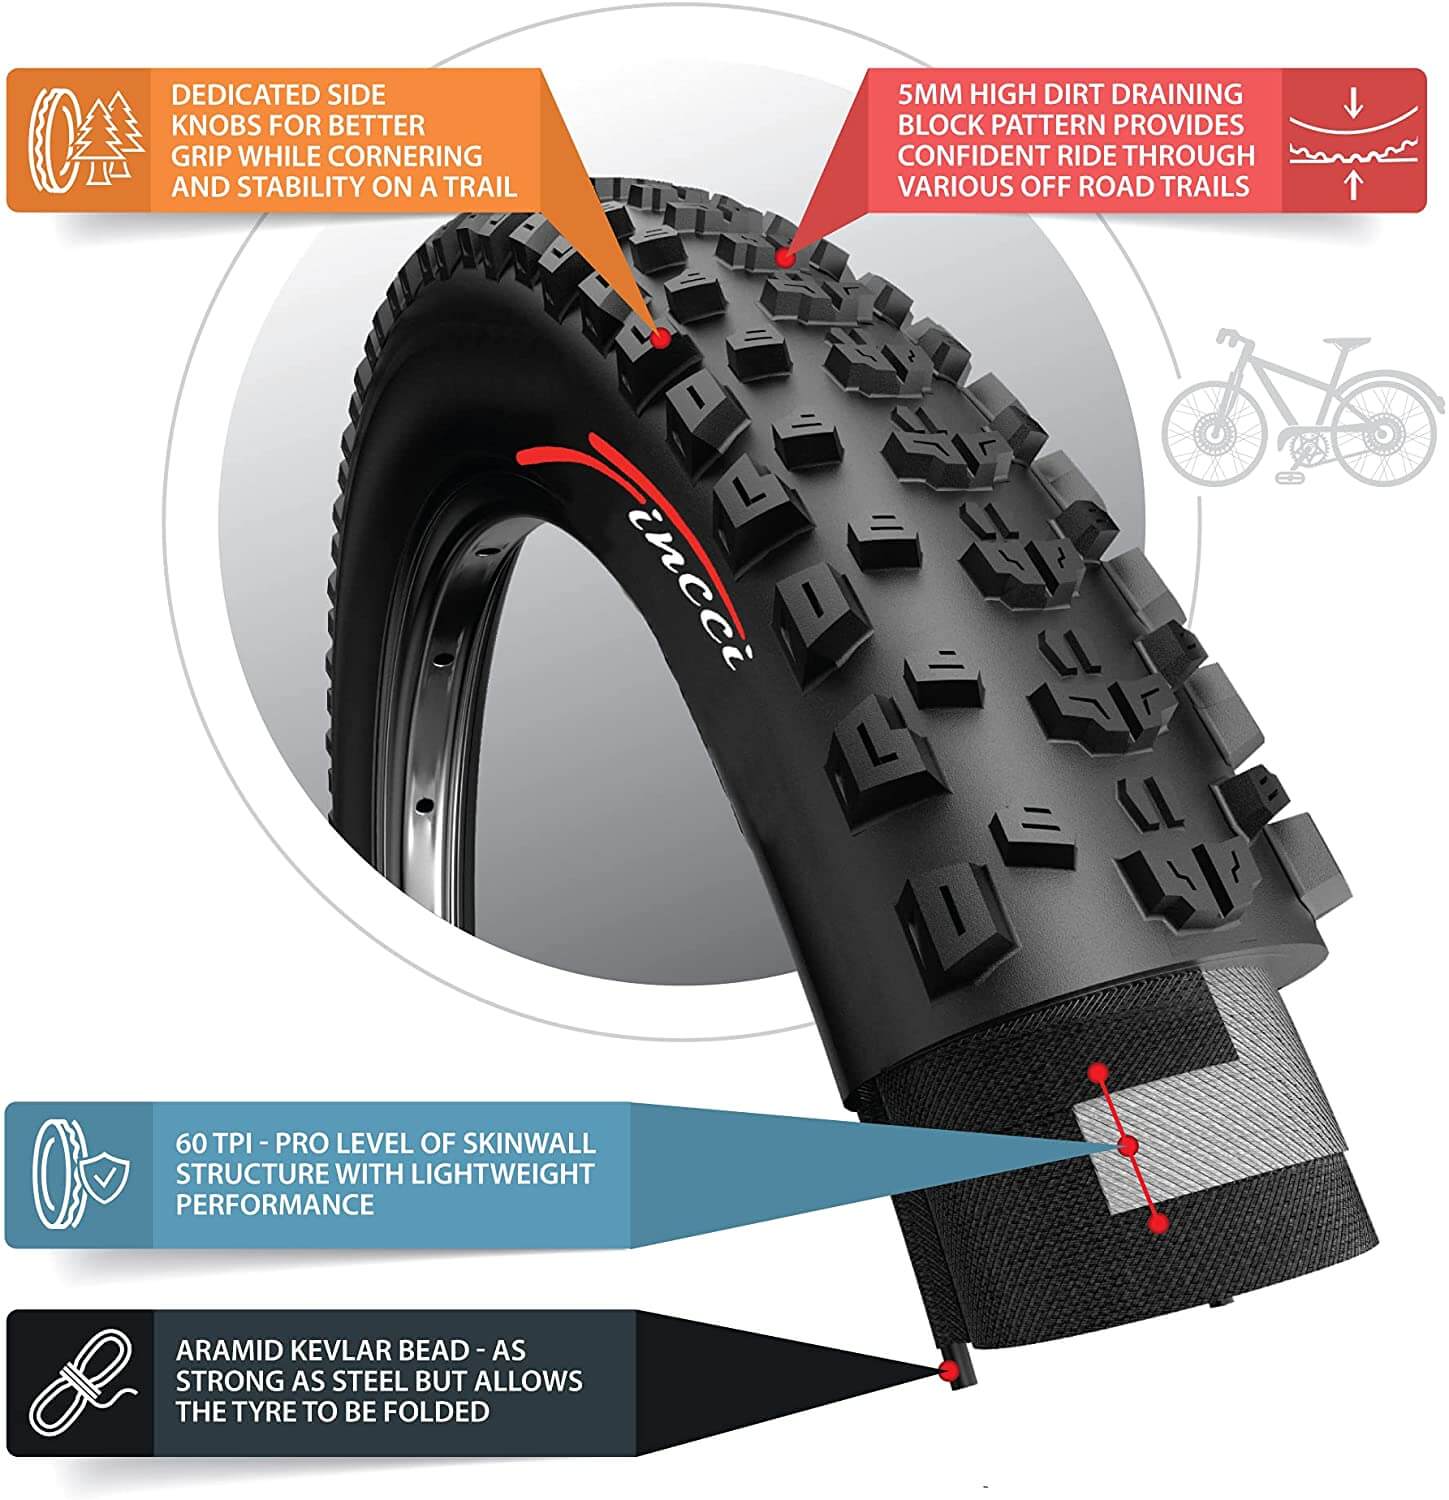 Fincci x 2.10 54-584 MTB Tyre - Buy in Online Shop